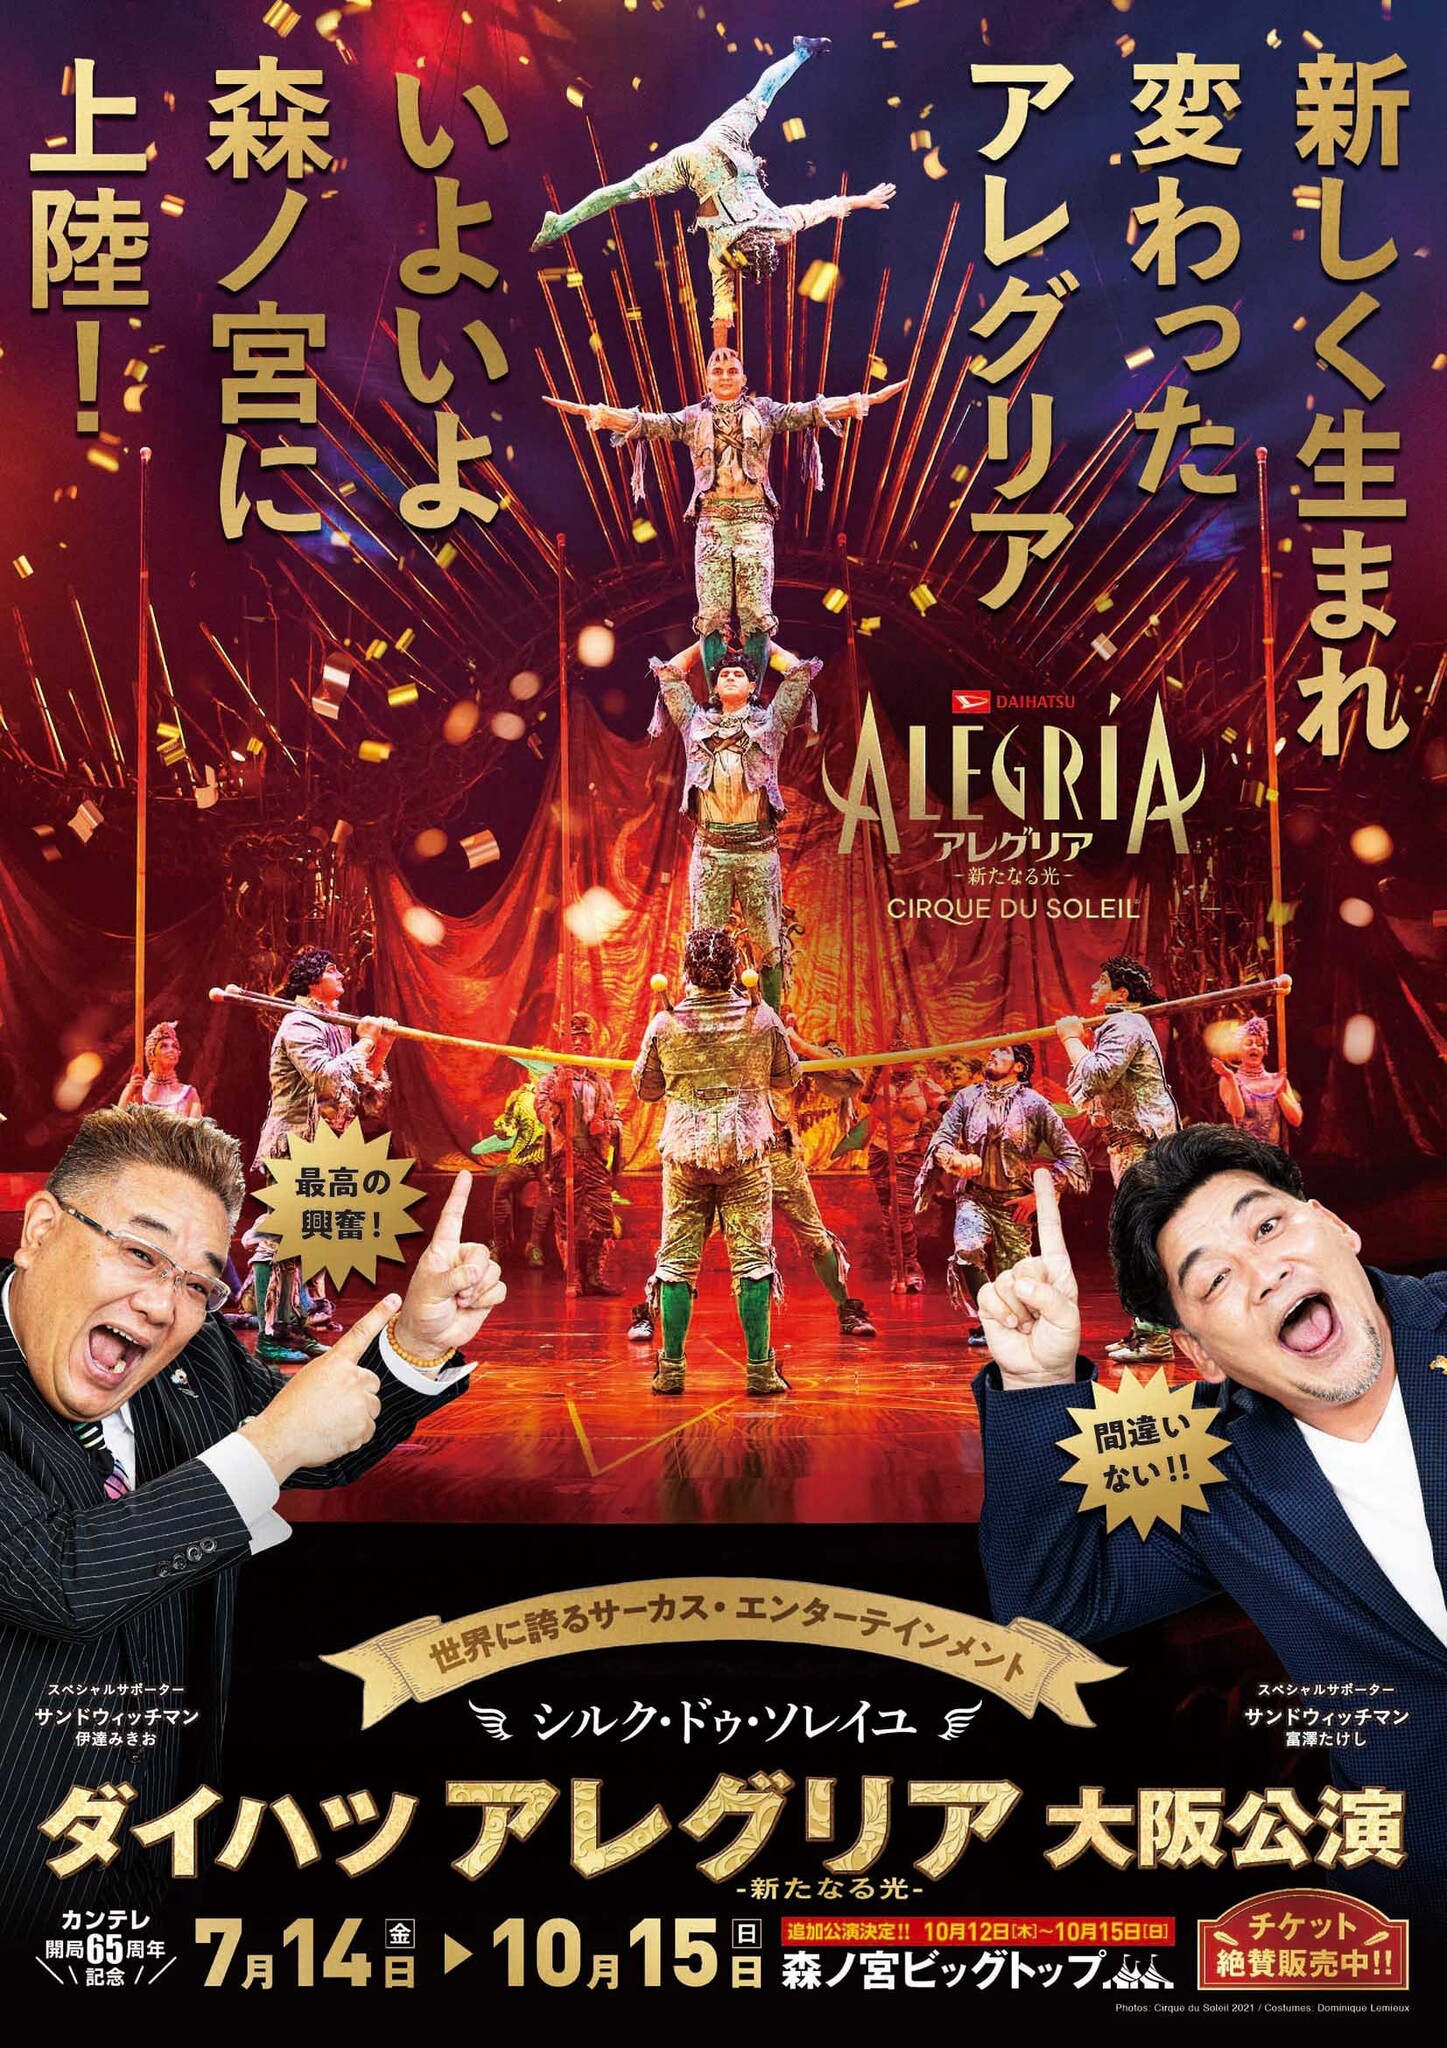 シルク・ドゥ・ソレイユ日本公演最新作『ダイハツ アレグリア-新たなる